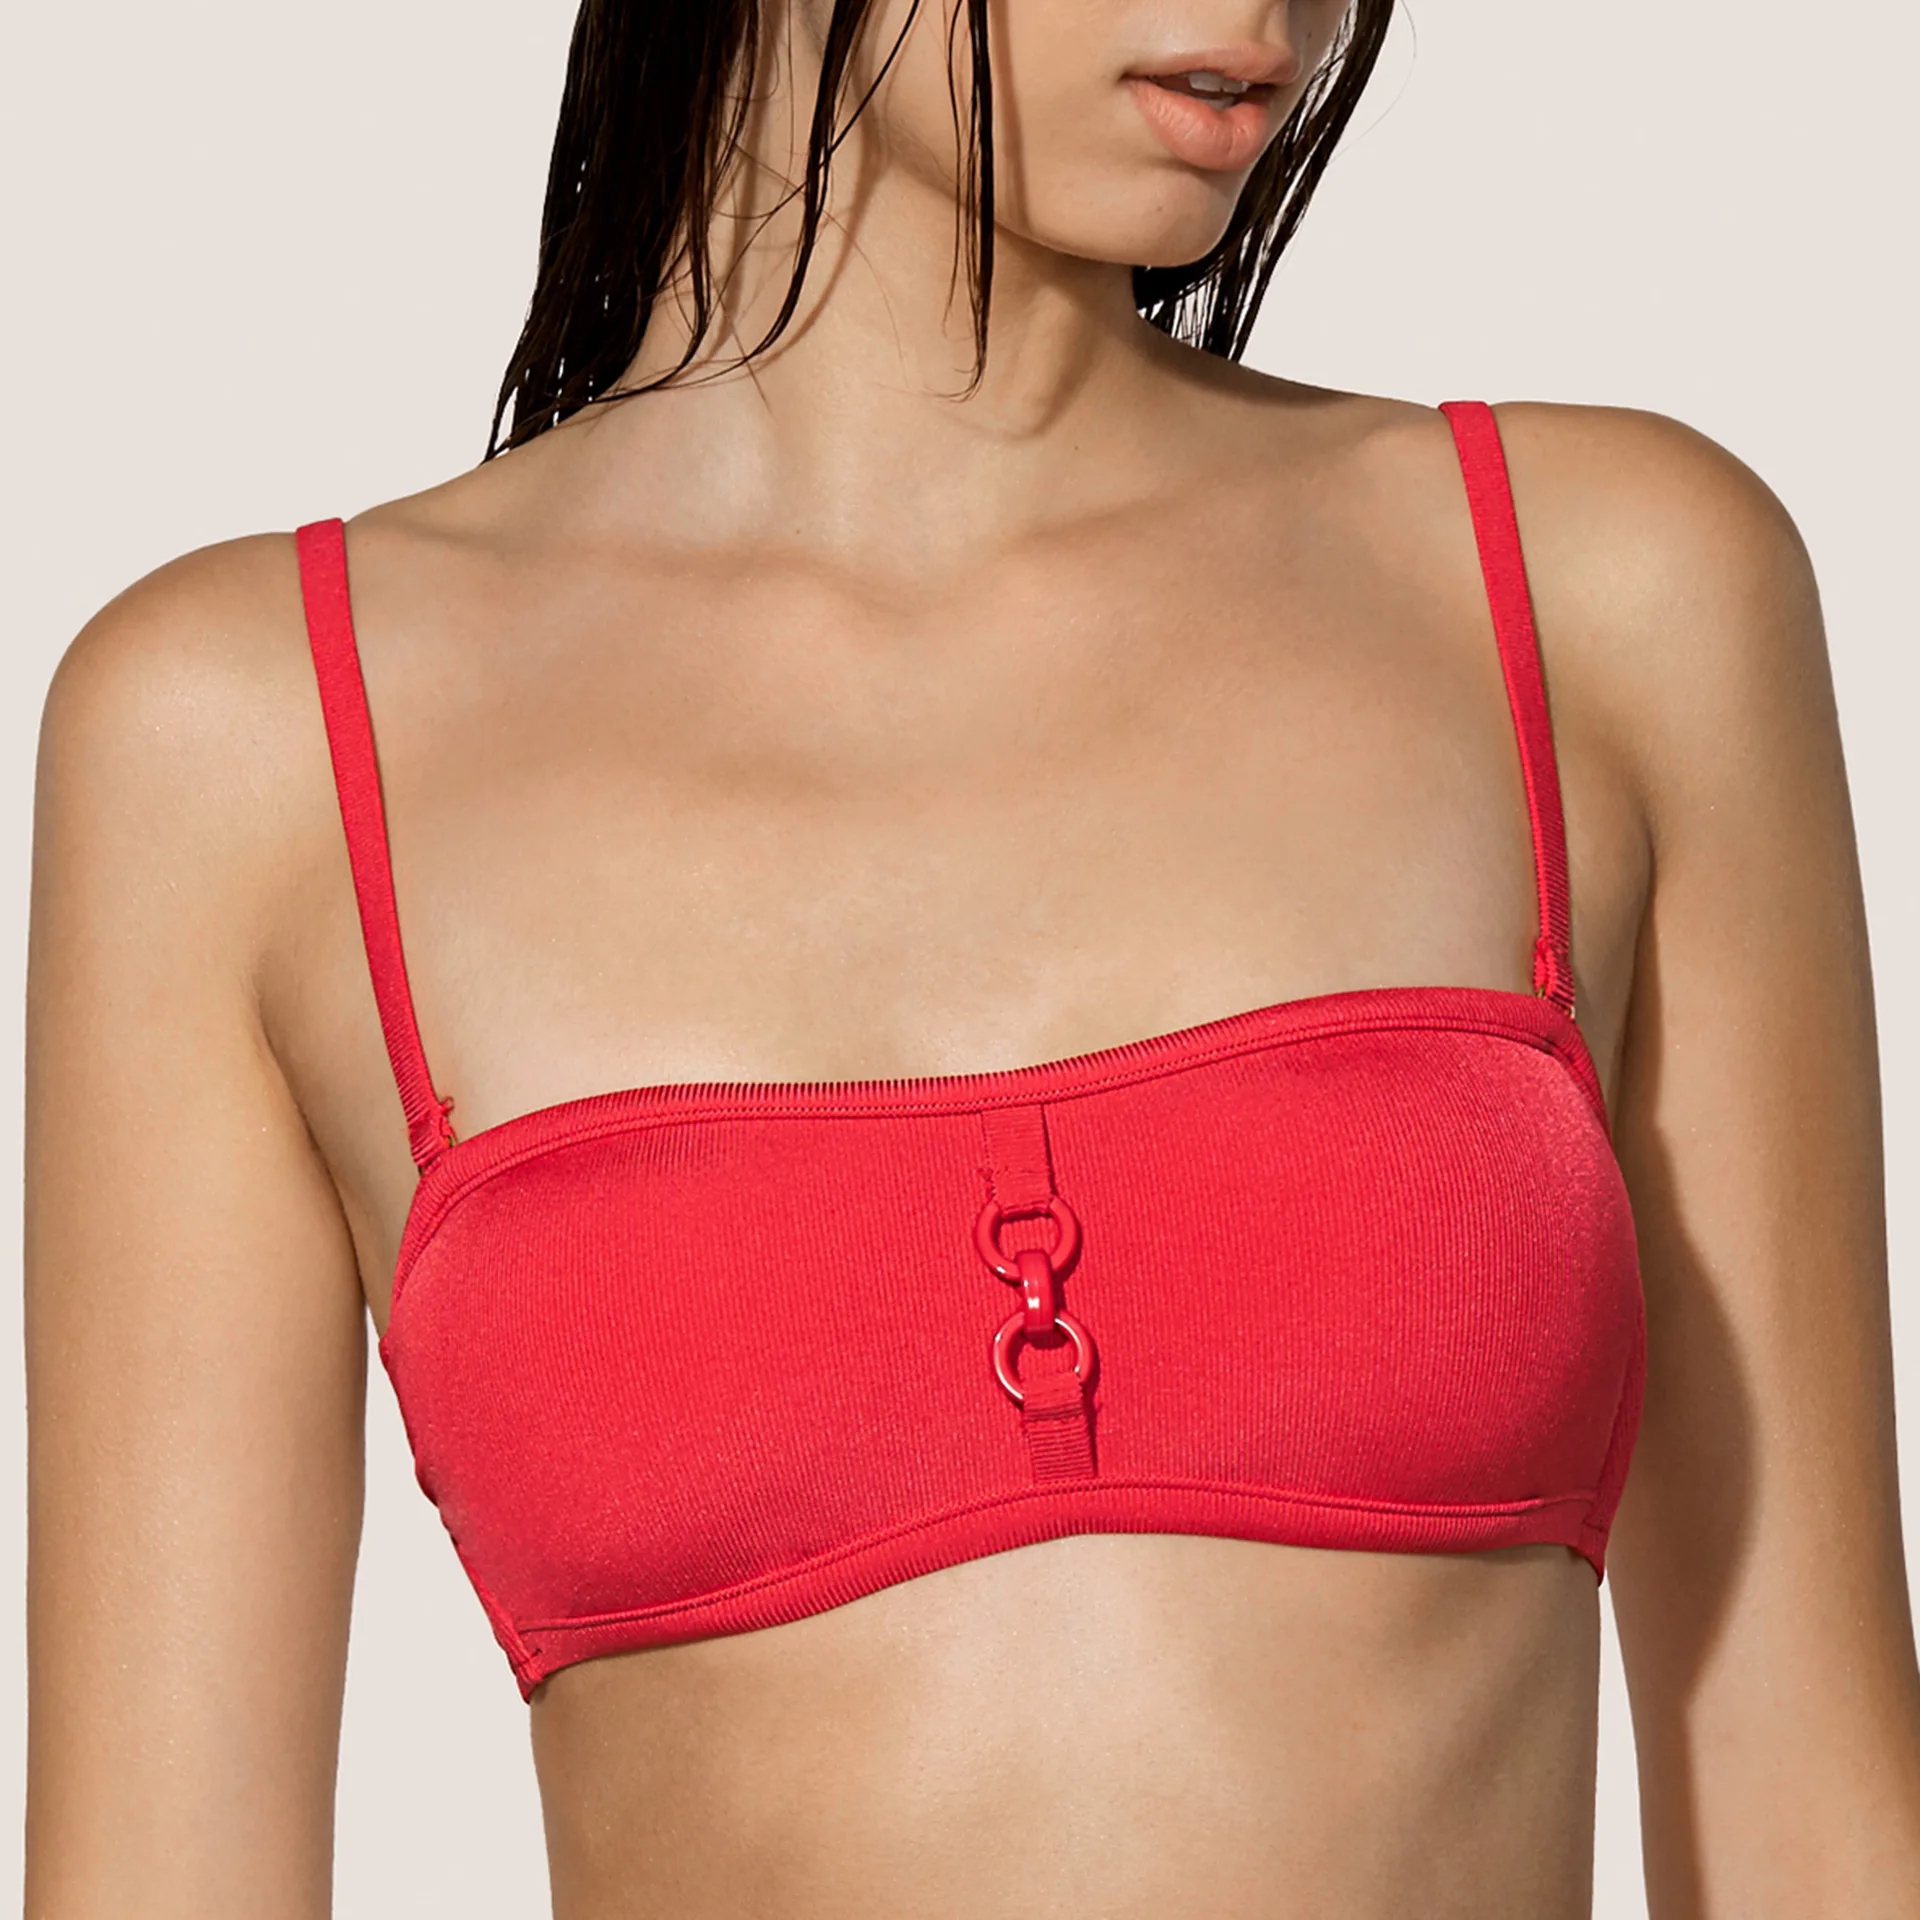 Andres Sarda Swimwear GRAY Red strapless bikini top wireless